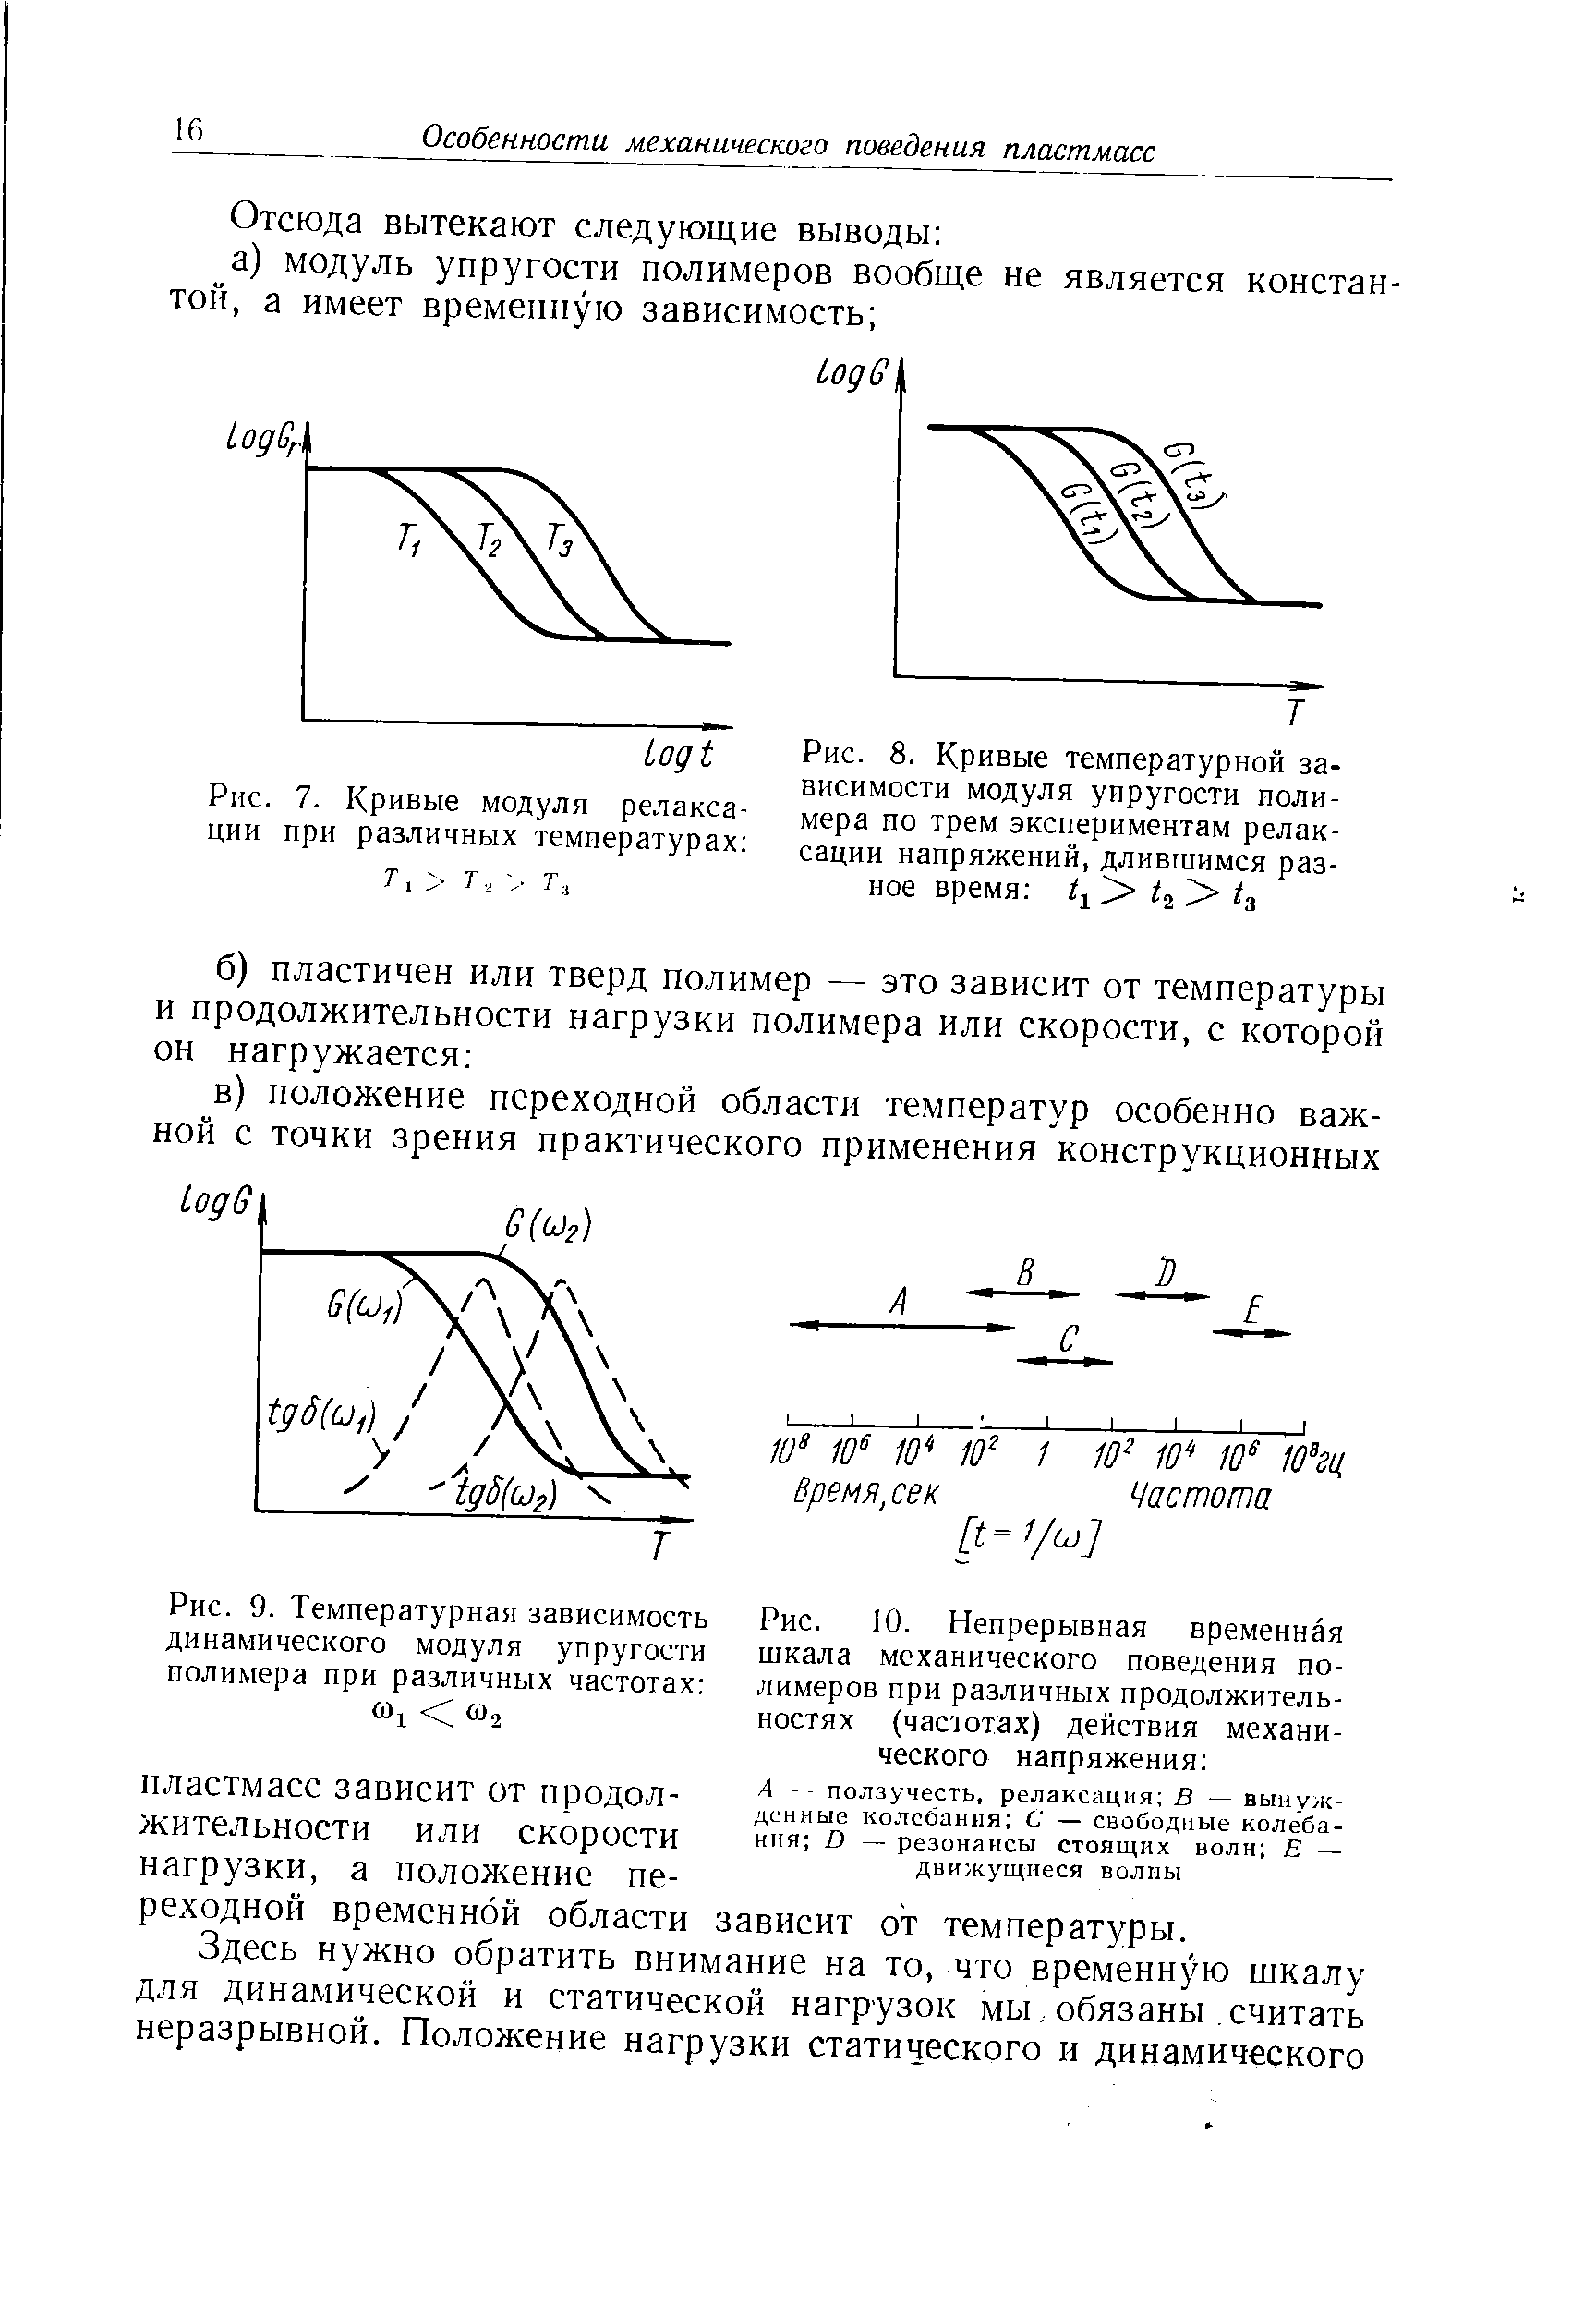 Рис. 7. Кривые модуля релаксации при различных температурах 
